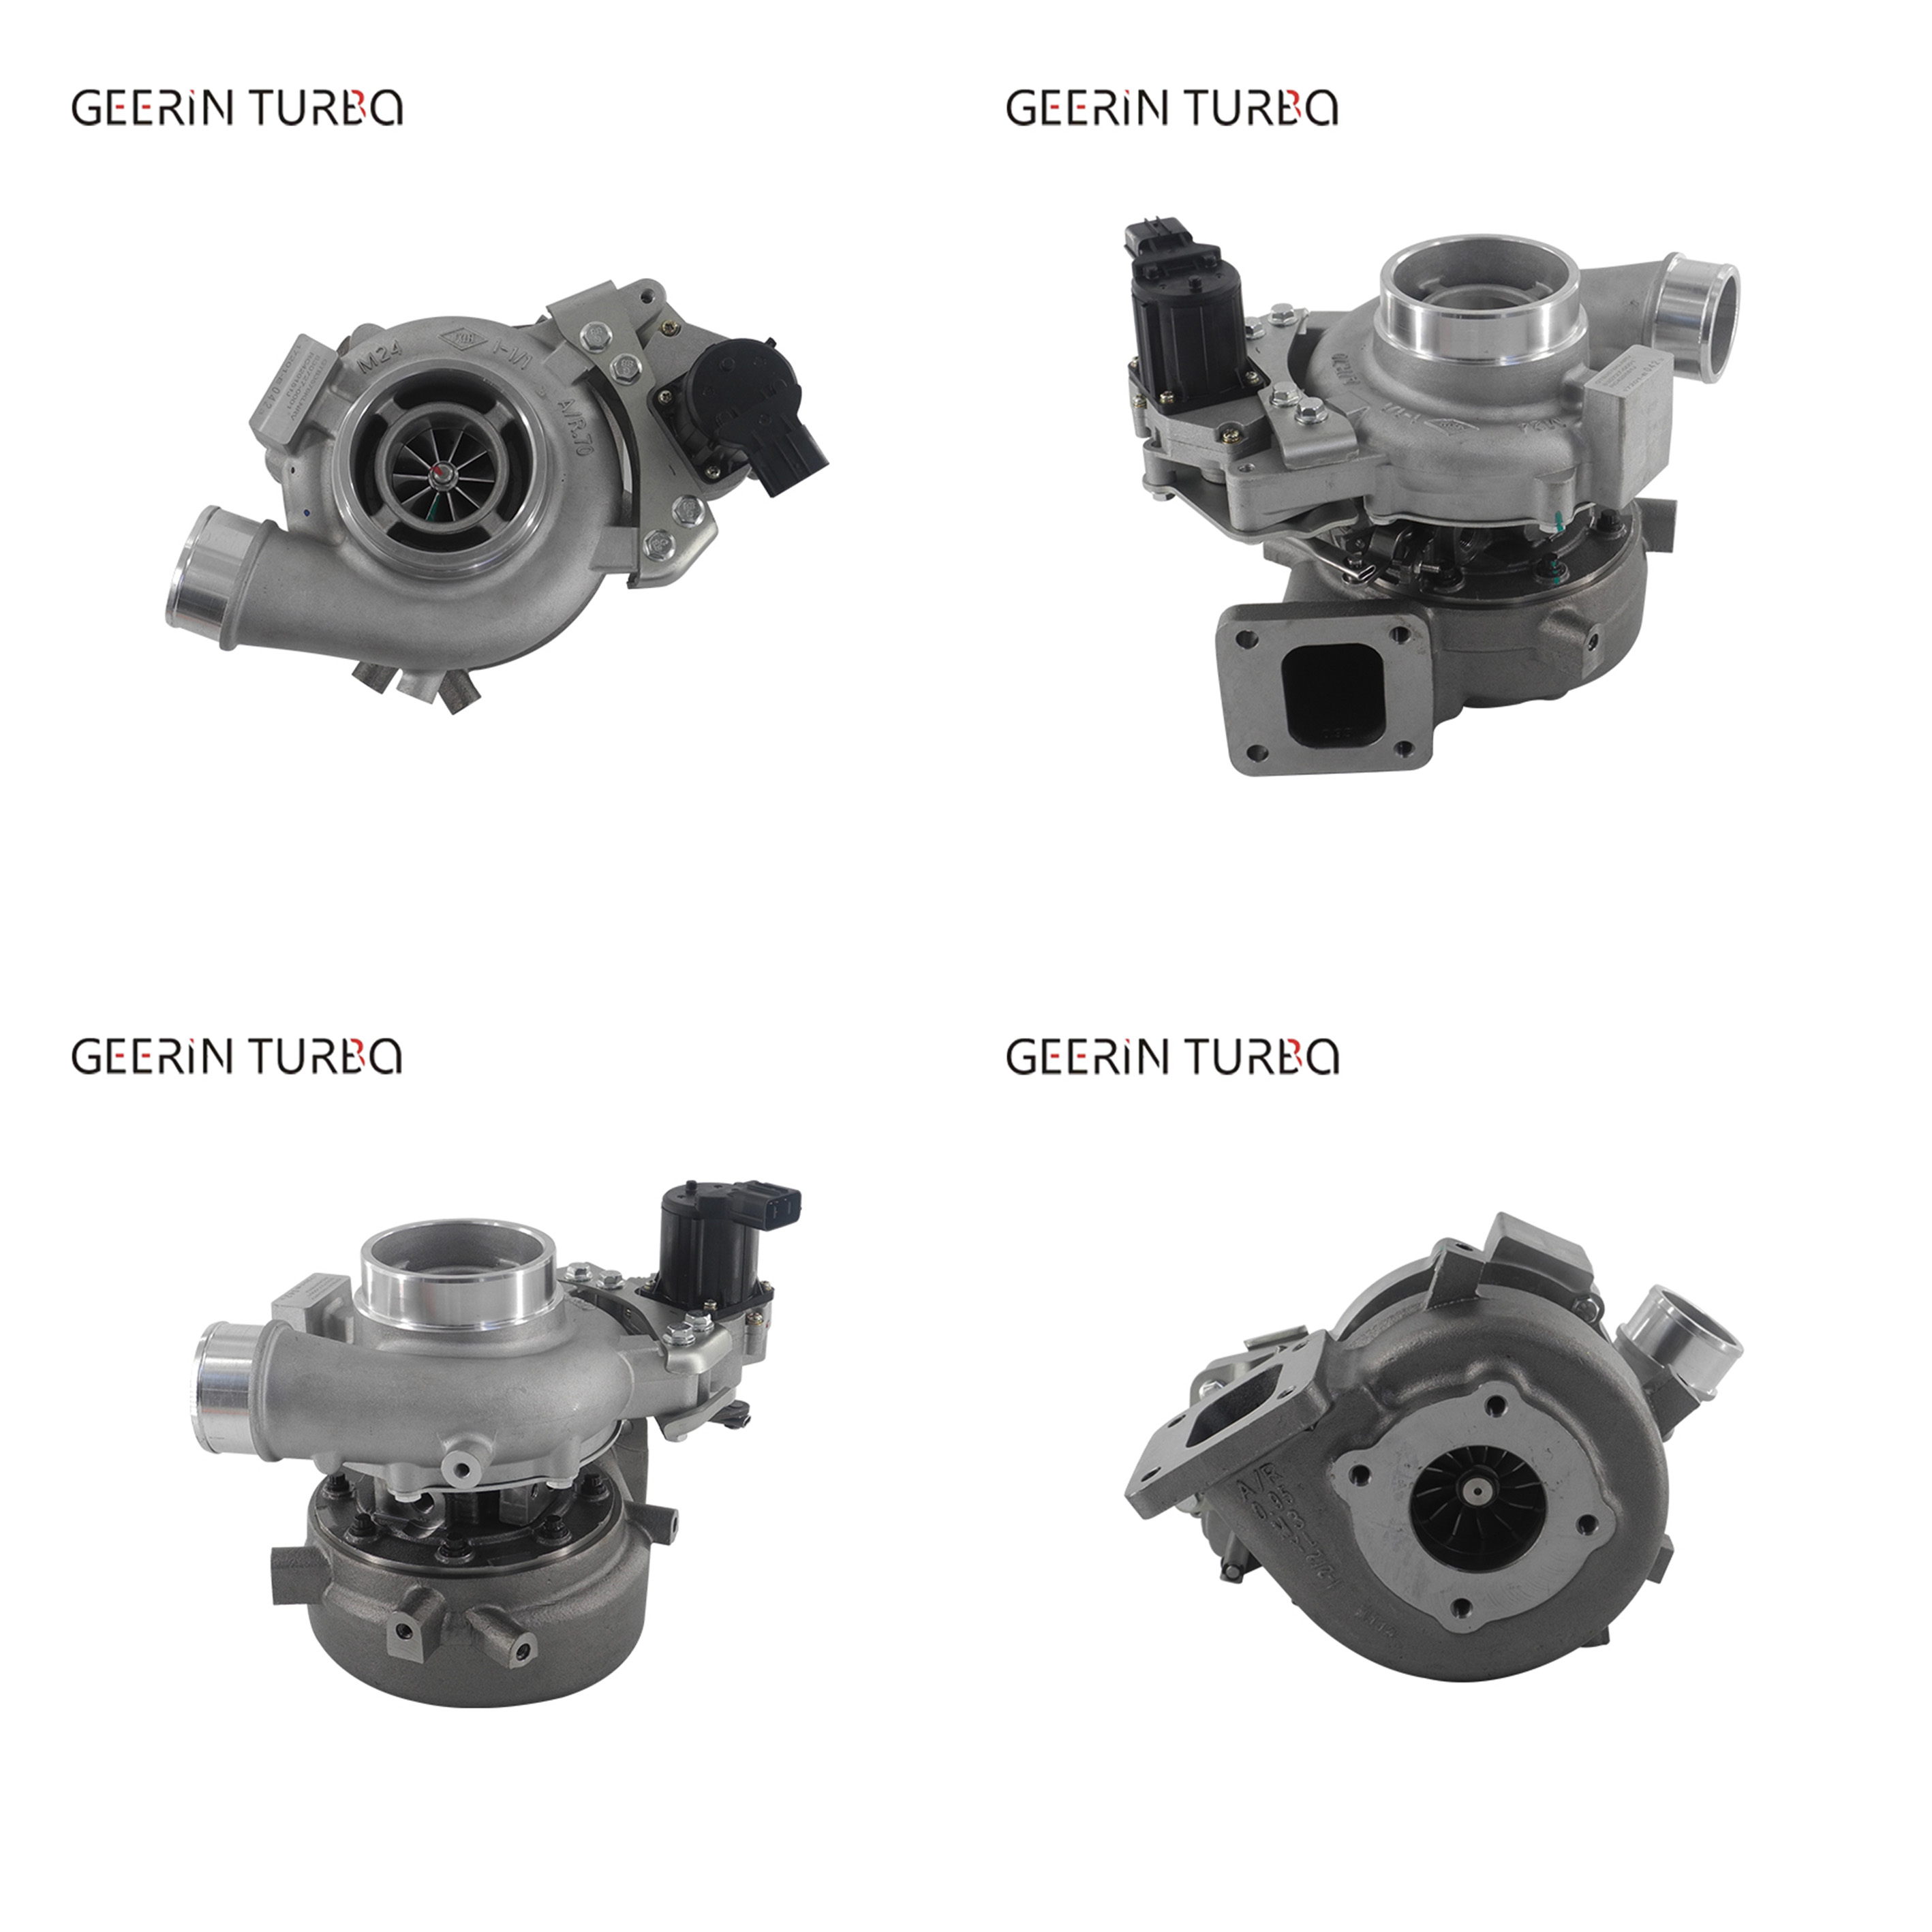 Comprar GT3576V 830727 -0001 nuevo turbocompresor para HINO, GT3576V 830727 -0001 nuevo turbocompresor para HINO Precios, GT3576V 830727 -0001 nuevo turbocompresor para HINO Marcas, GT3576V 830727 -0001 nuevo turbocompresor para HINO Fabricante, GT3576V 830727 -0001 nuevo turbocompresor para HINO Citas, GT3576V 830727 -0001 nuevo turbocompresor para HINO Empresa.